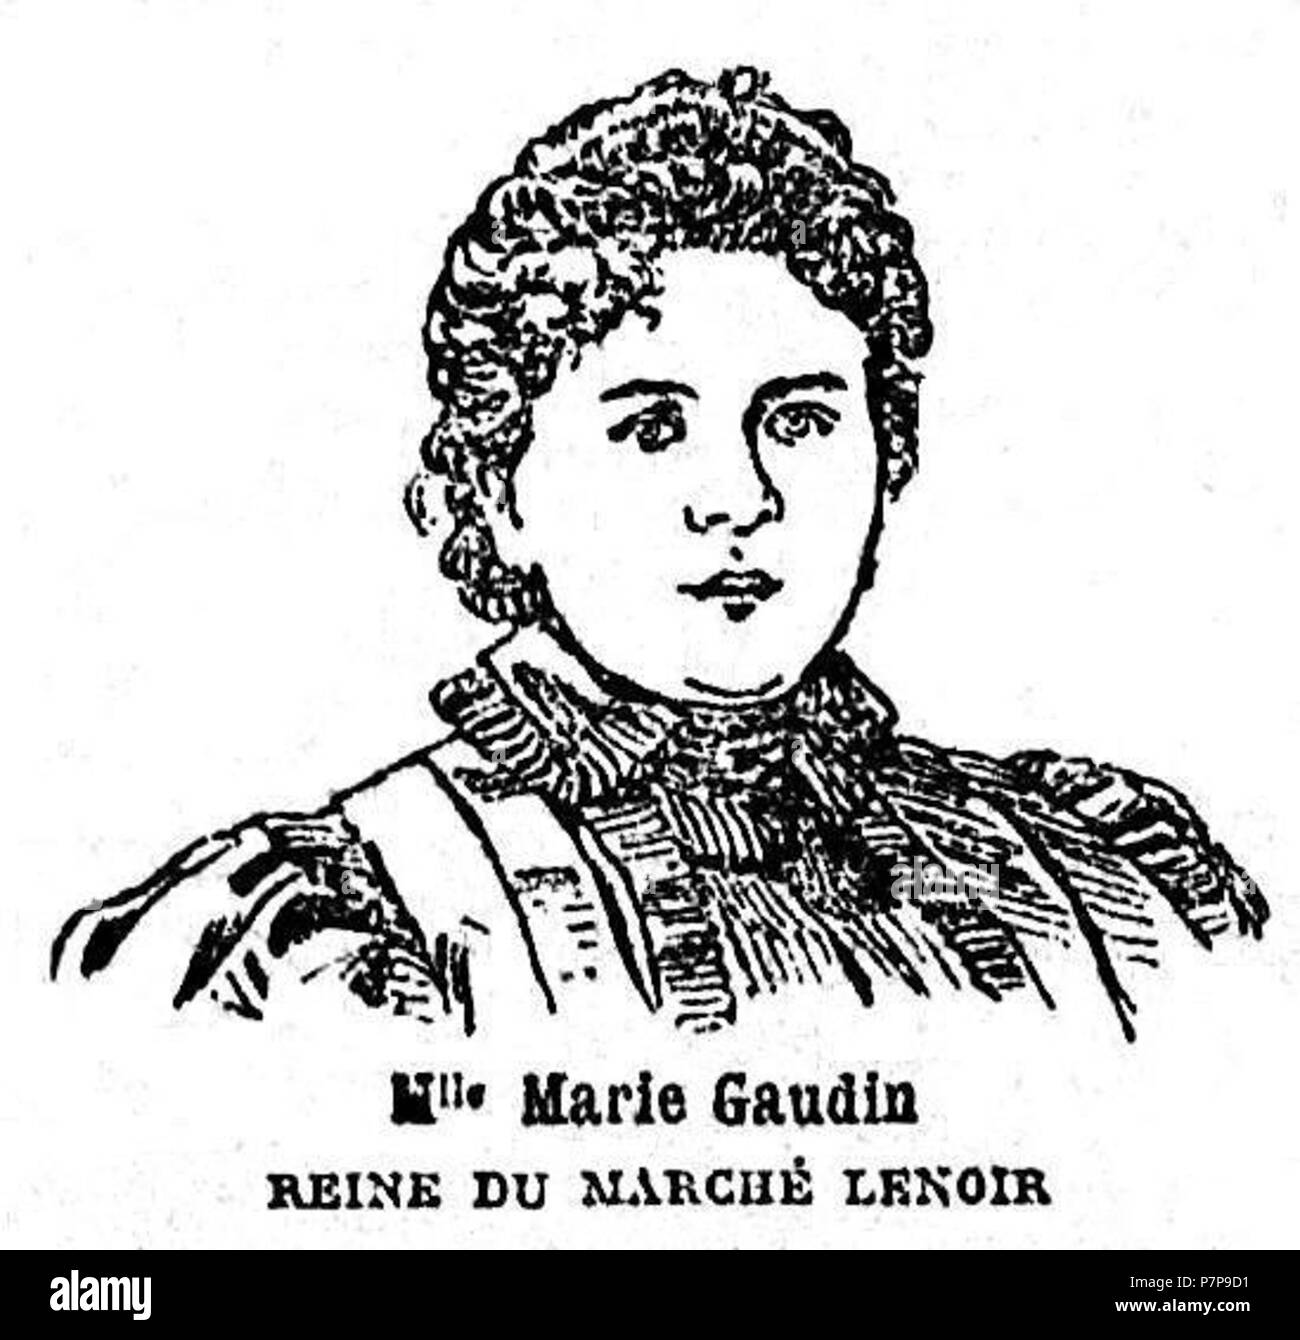 259 Marie Gaudin Reine du Marché Lenoir Foto Stock